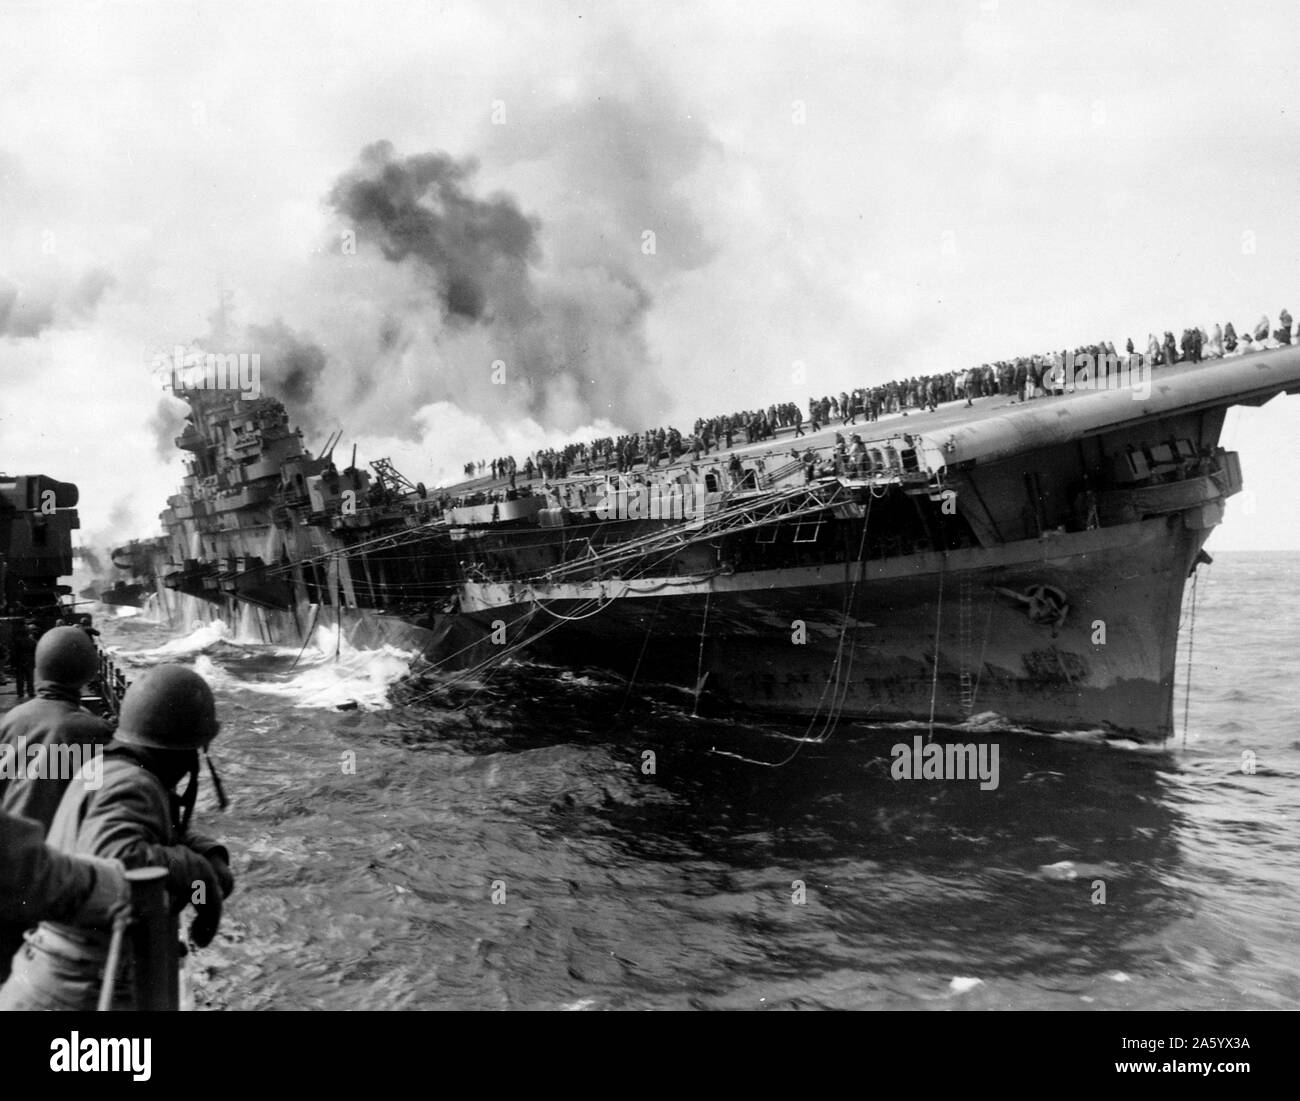 Portaerei USS Franklin (CV-13) attaccato dalla marina giapponese, durante la II Guerra Mondiale, Marzo 19, 1945. Foto Stock